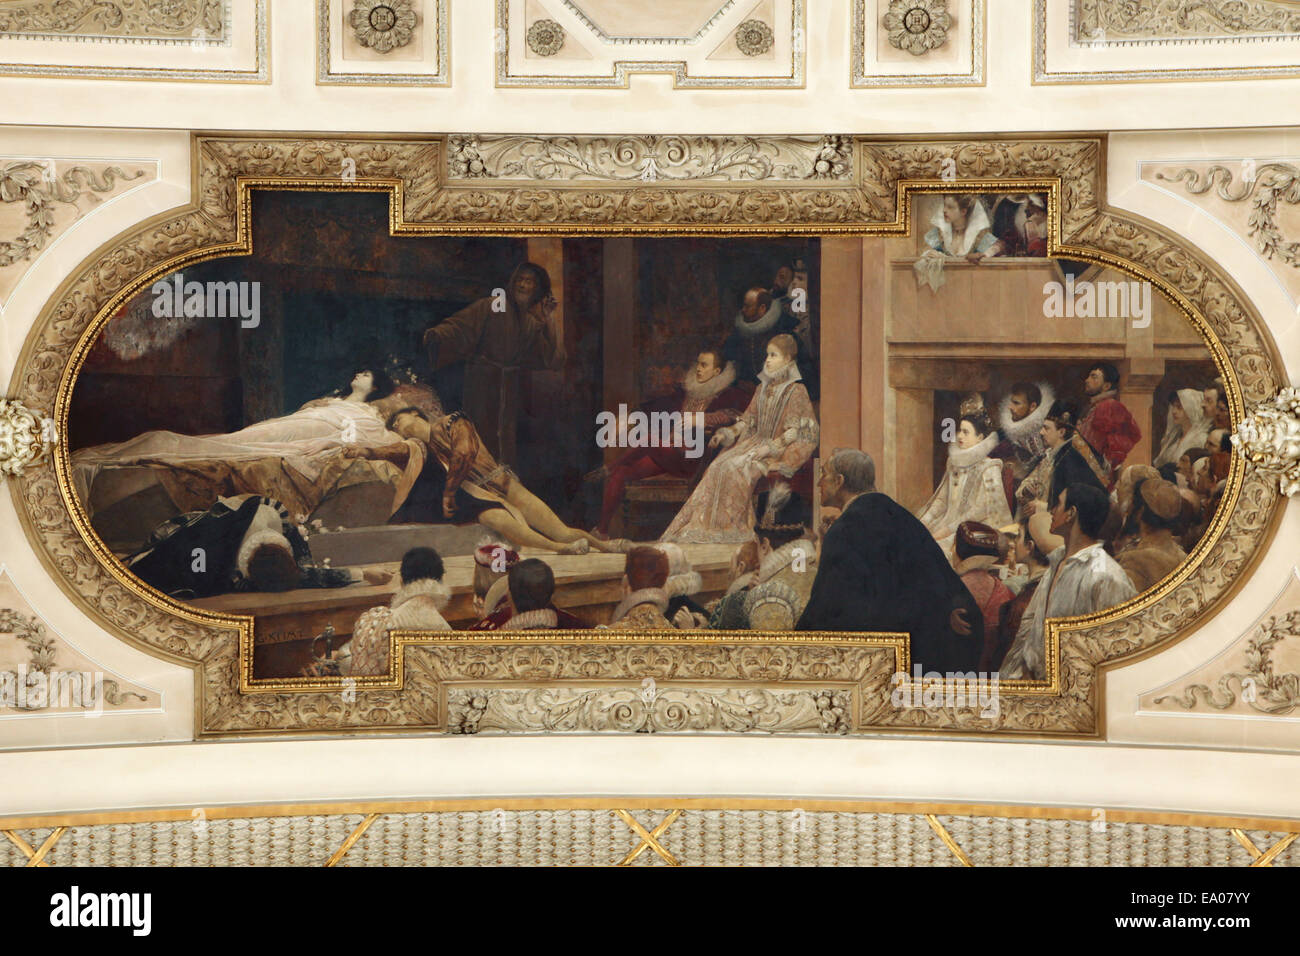 Das Shakespeare-Theater. Romeo und Julia. Deckengemälde von Gustav Klimt von 1886 / 87 im Burgtheater in Wien, Österreich. Stockfoto